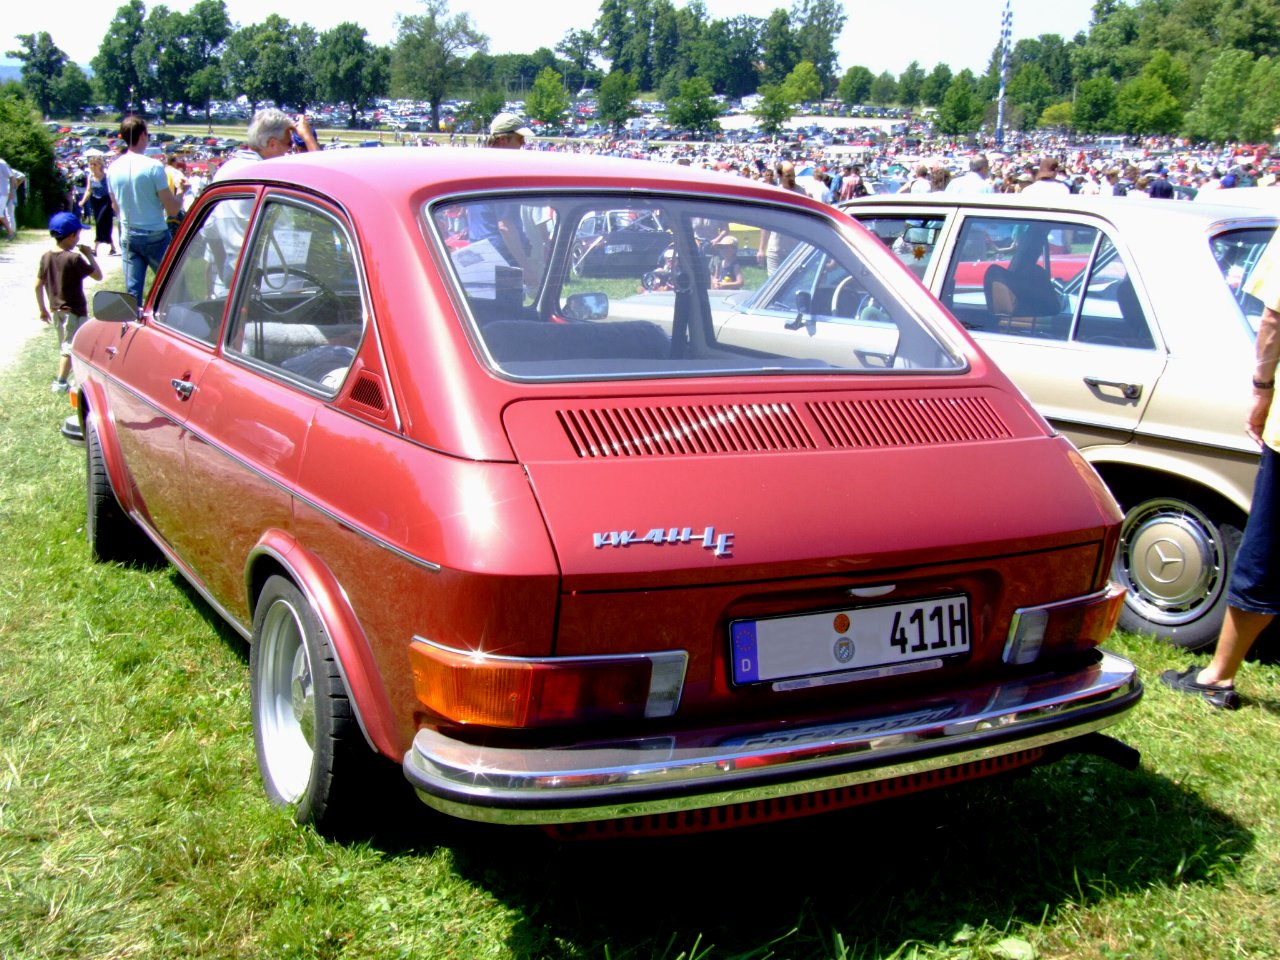 VW 411 LE 1971 2